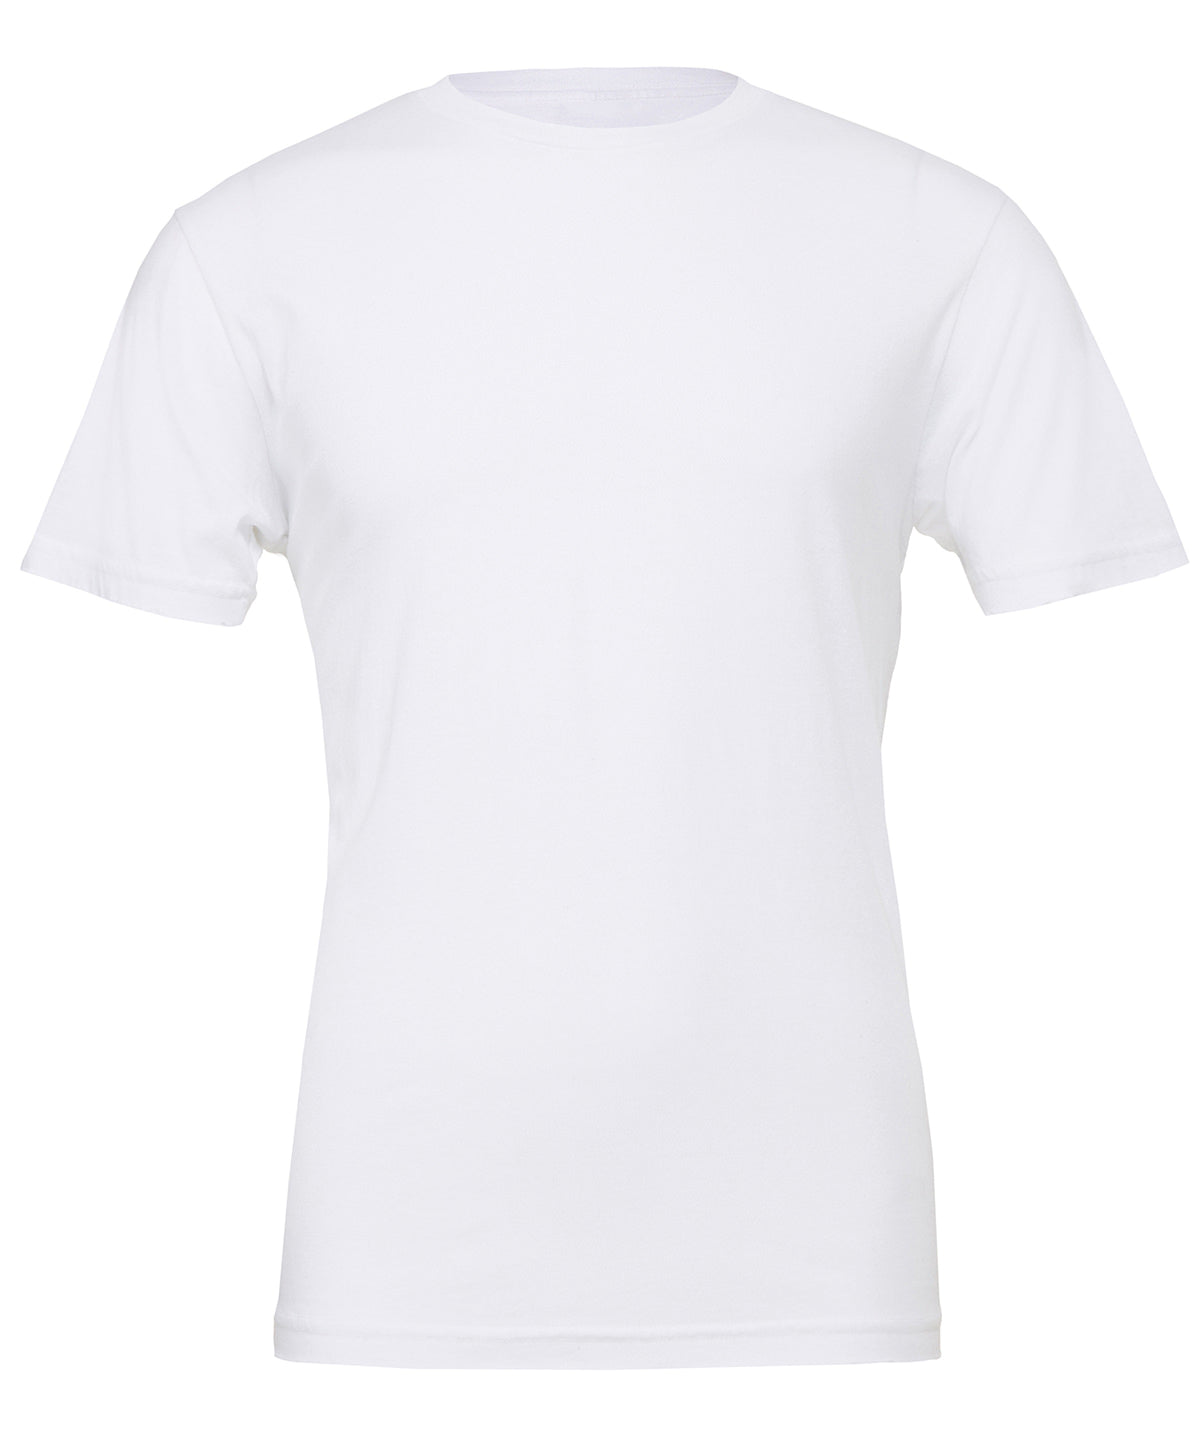 Bella Canvas Unisex Jersey Crew Neck T-Shirt - White